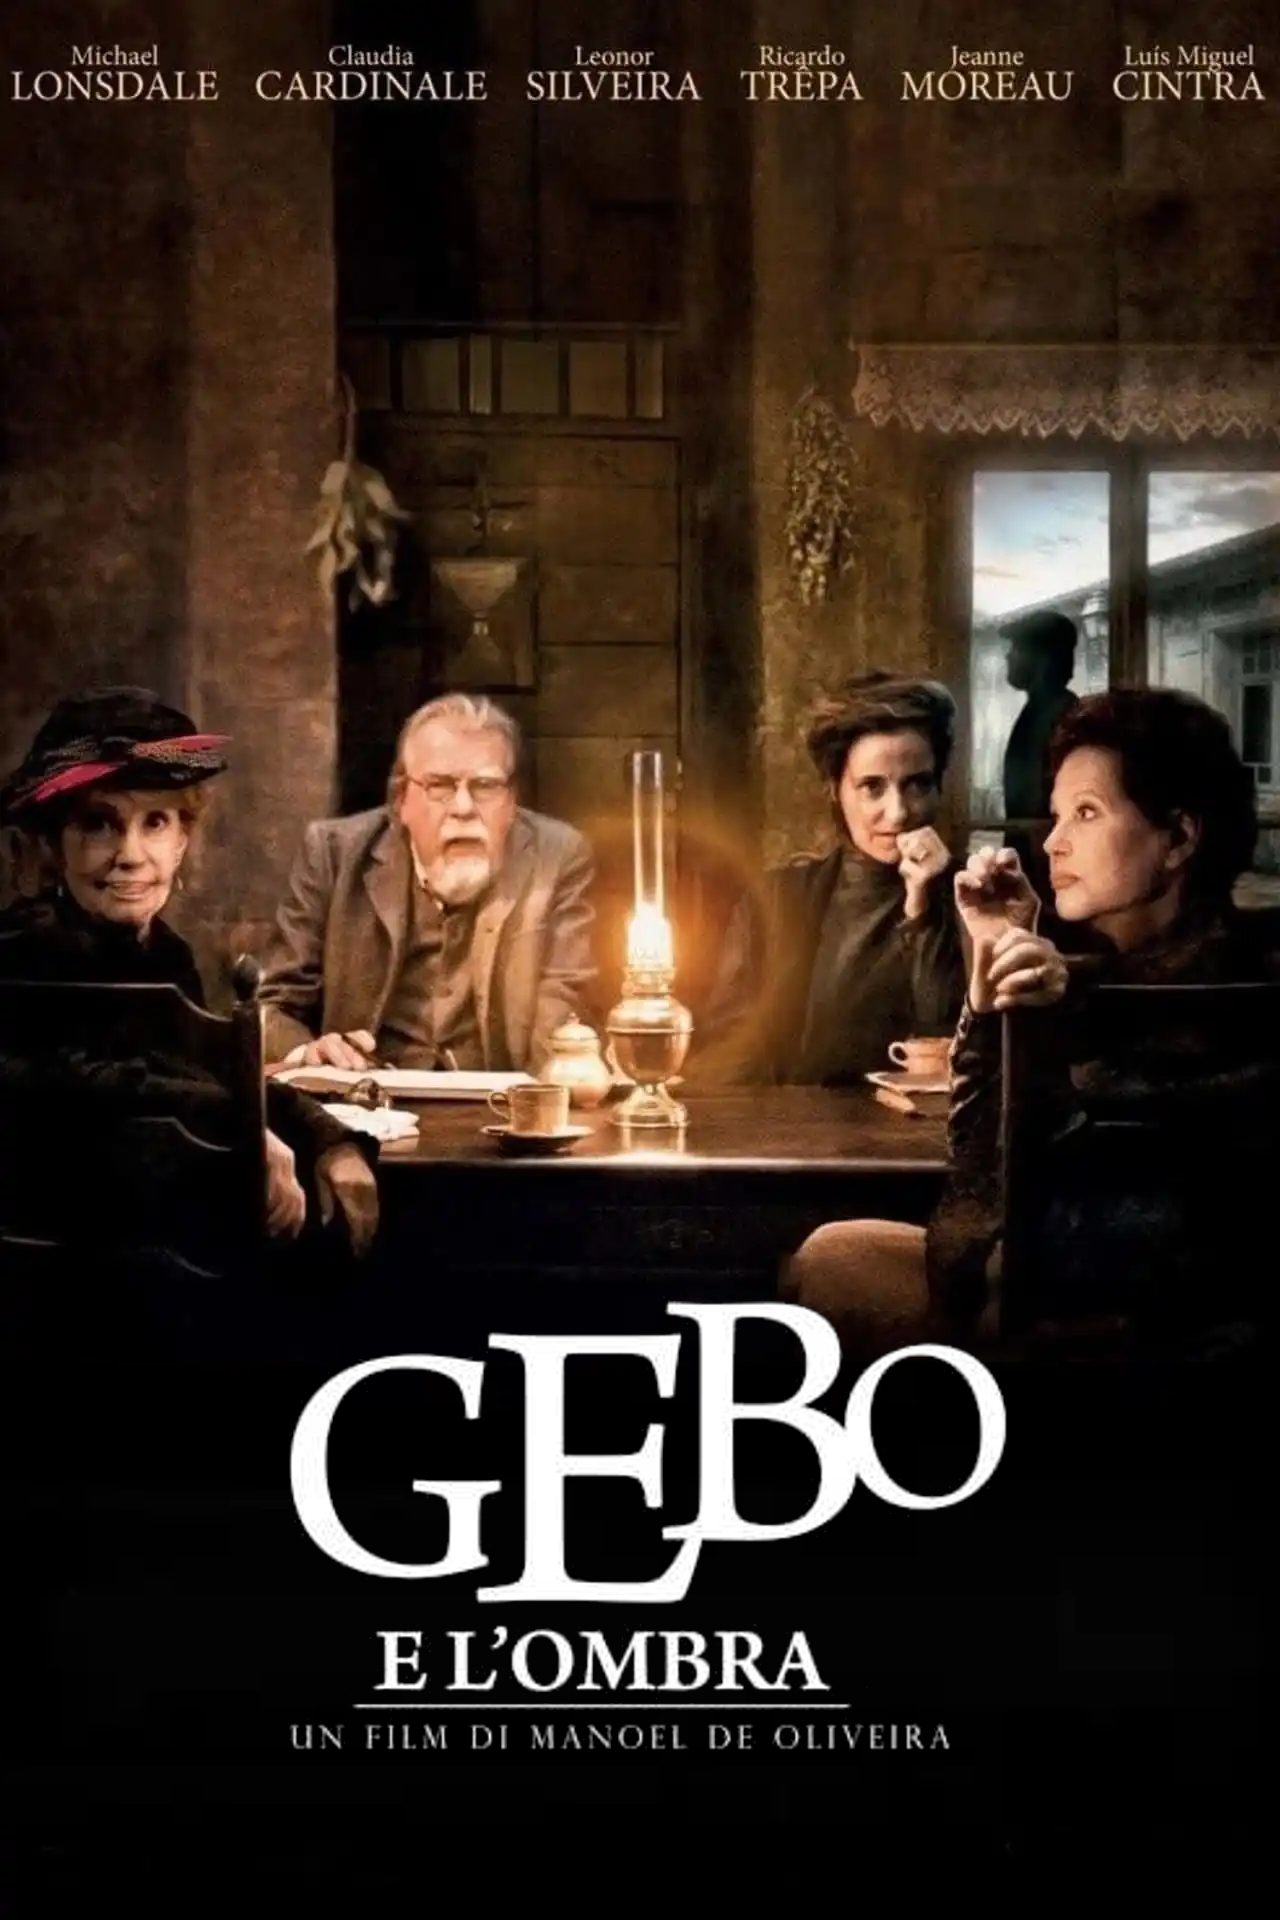 Gebo e L’ombra [HD] (2014)